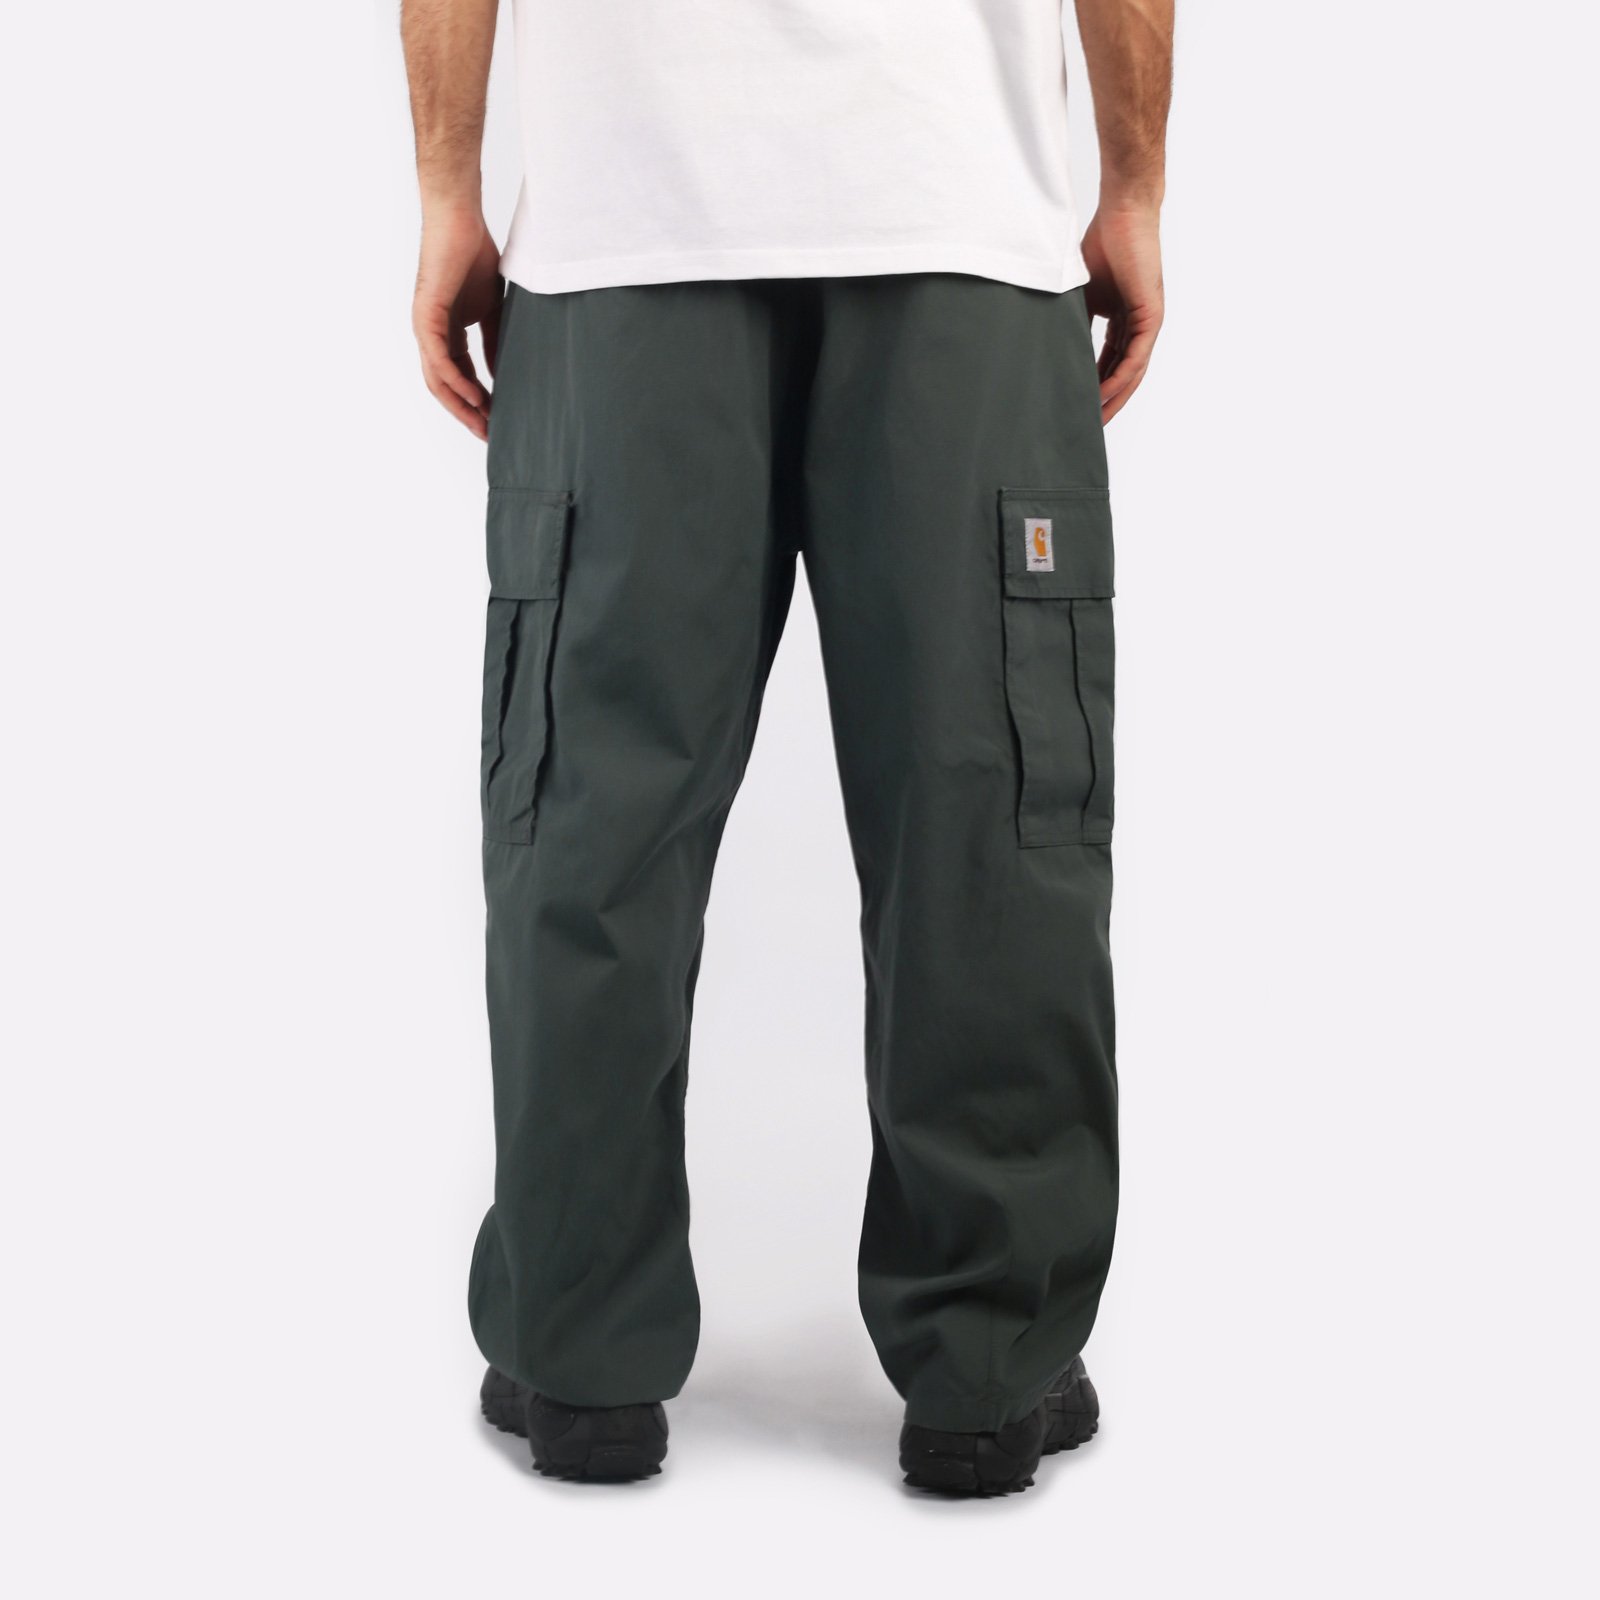 мужские брюки Carhartt WIP Cole Cargo Pant  (I030477-jura)  - цена, описание, фото 2